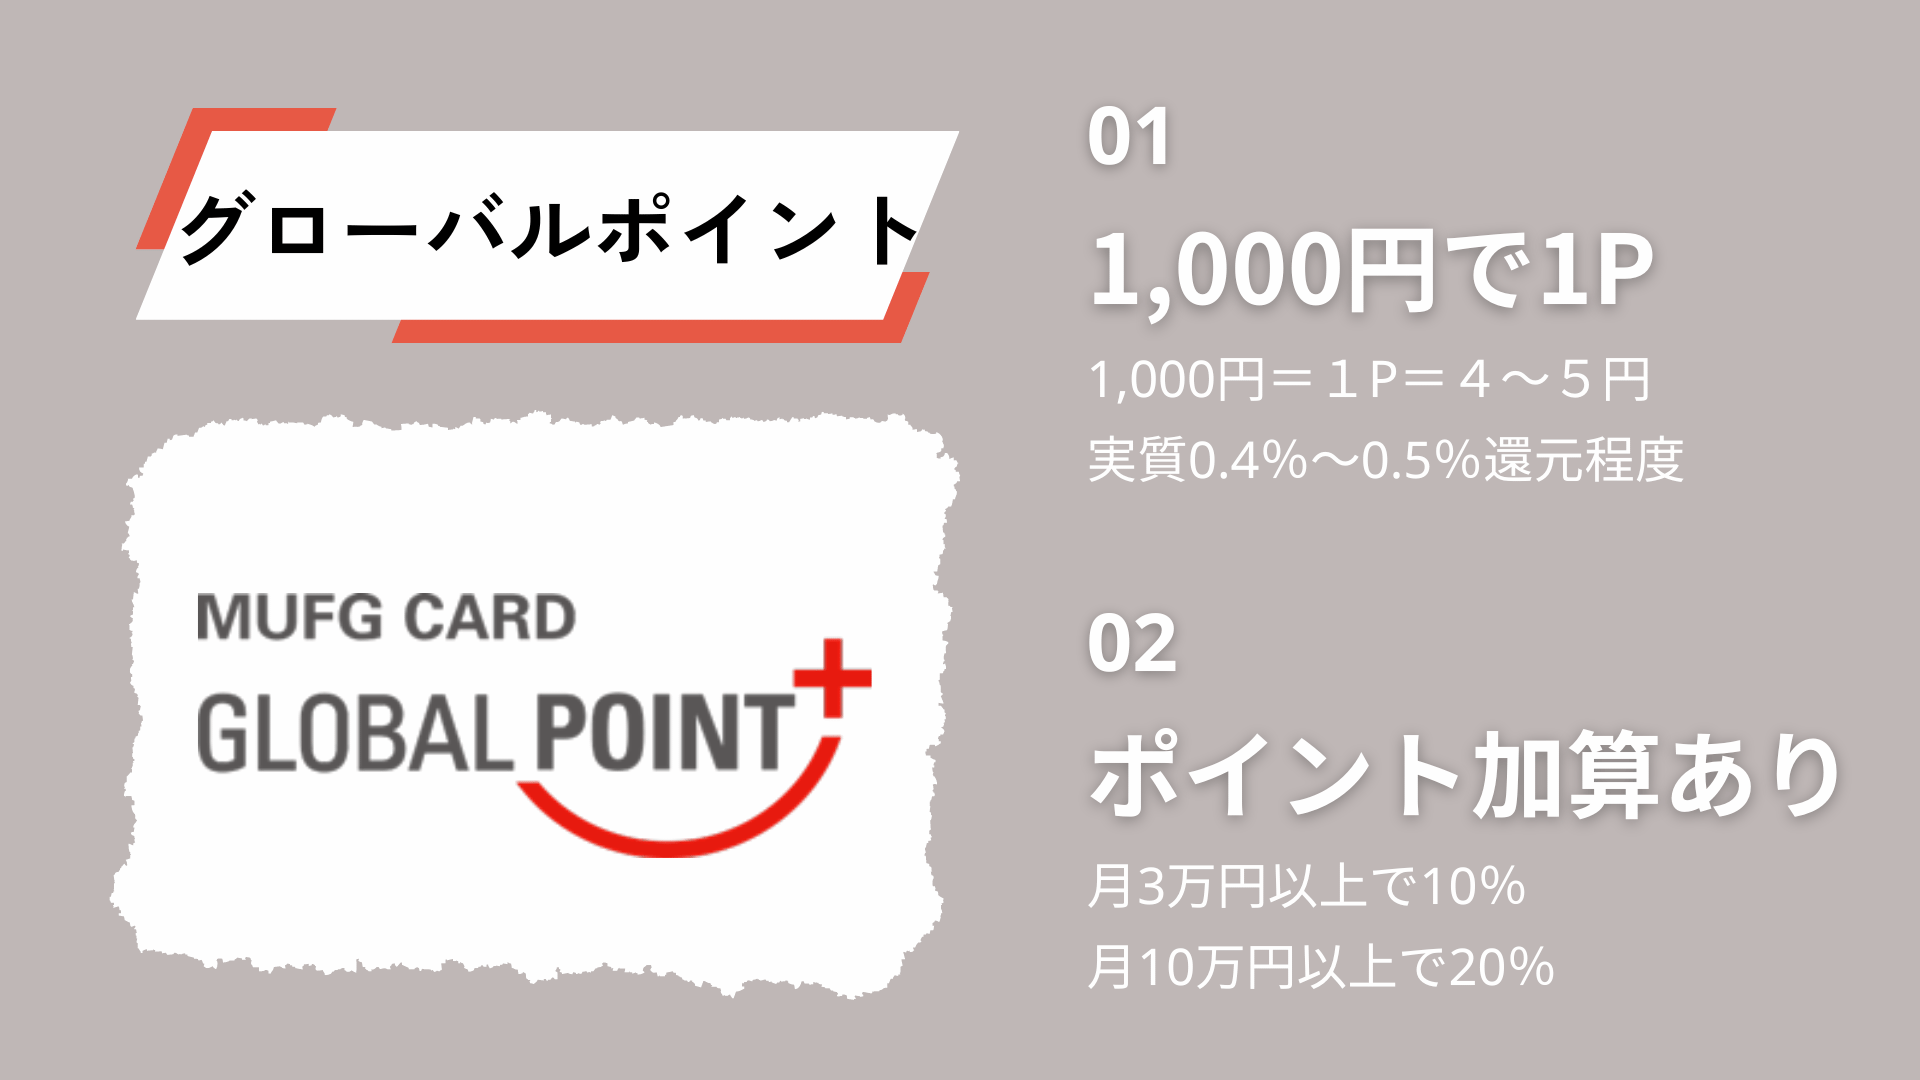 三菱UFJカードで貯まるグローバルポイントの特徴2点